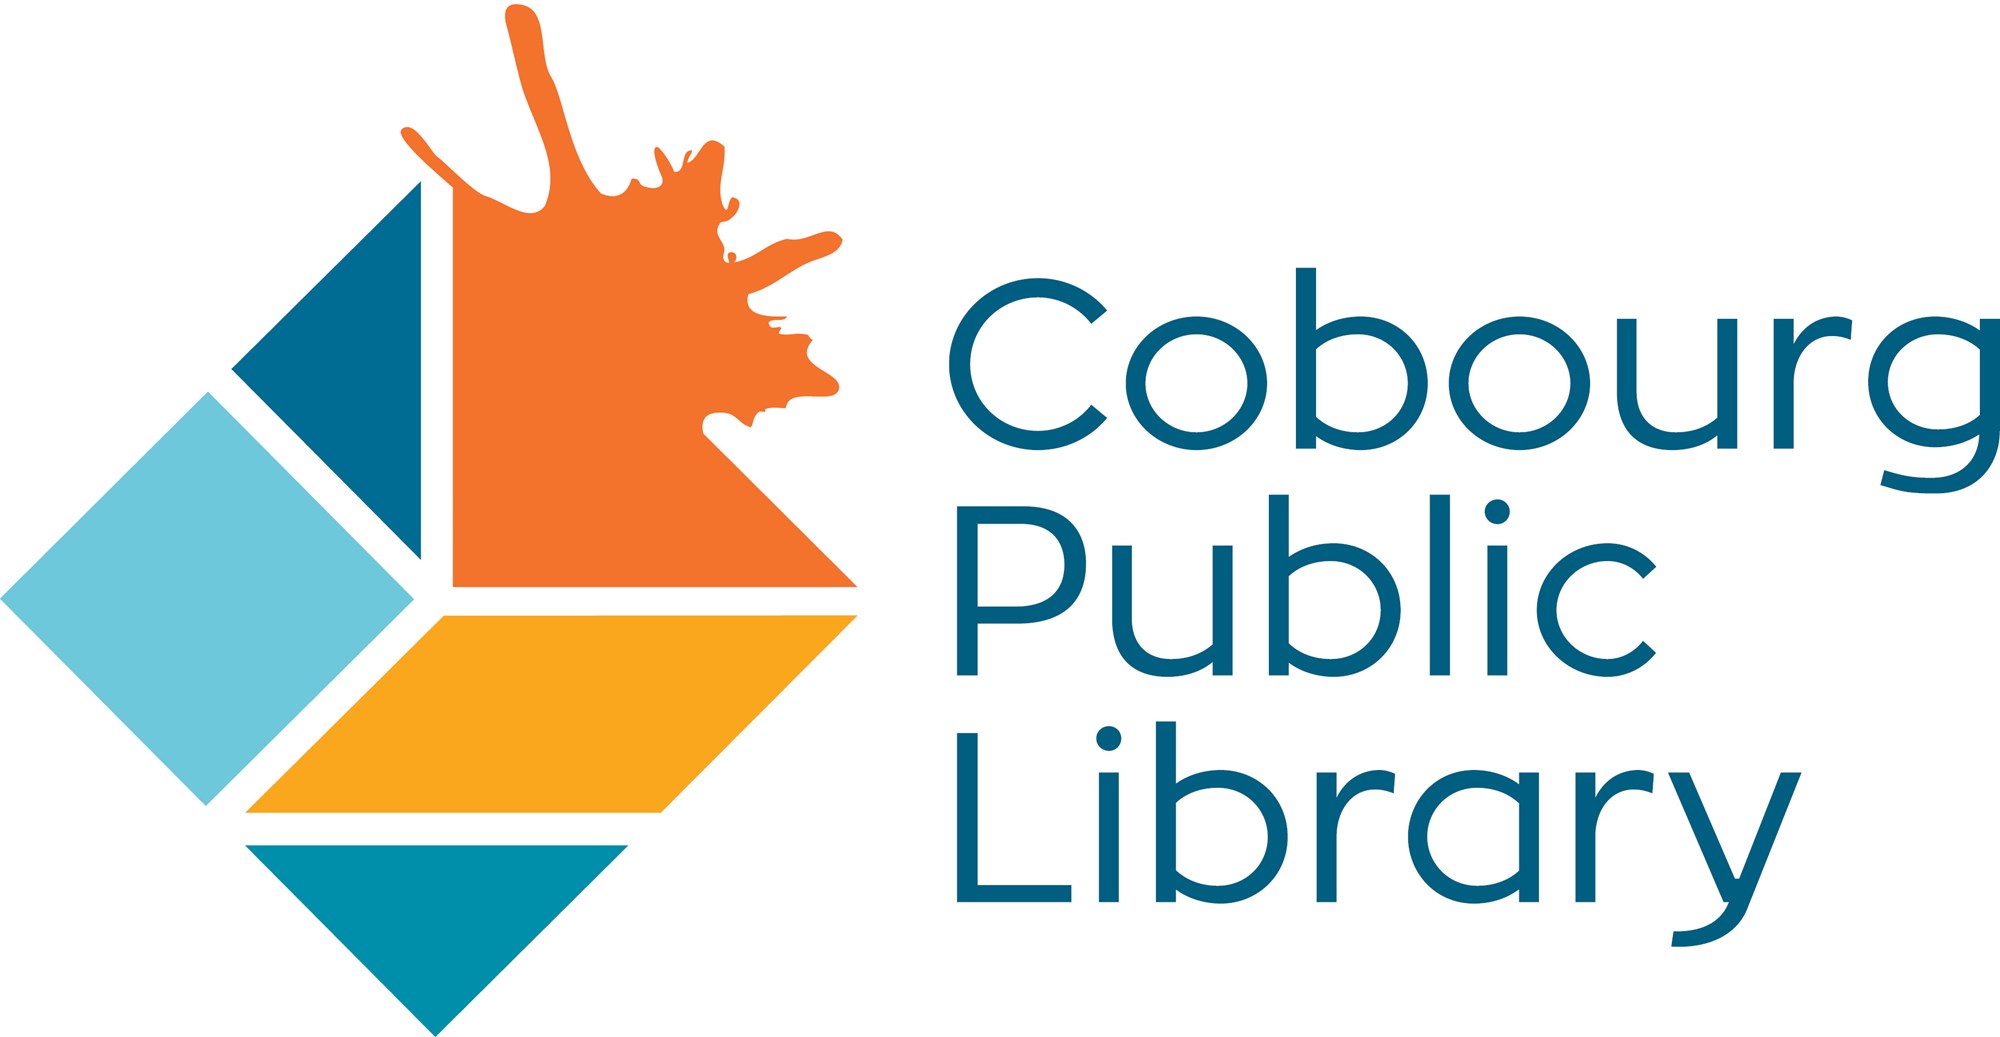 Cobourg Public Library